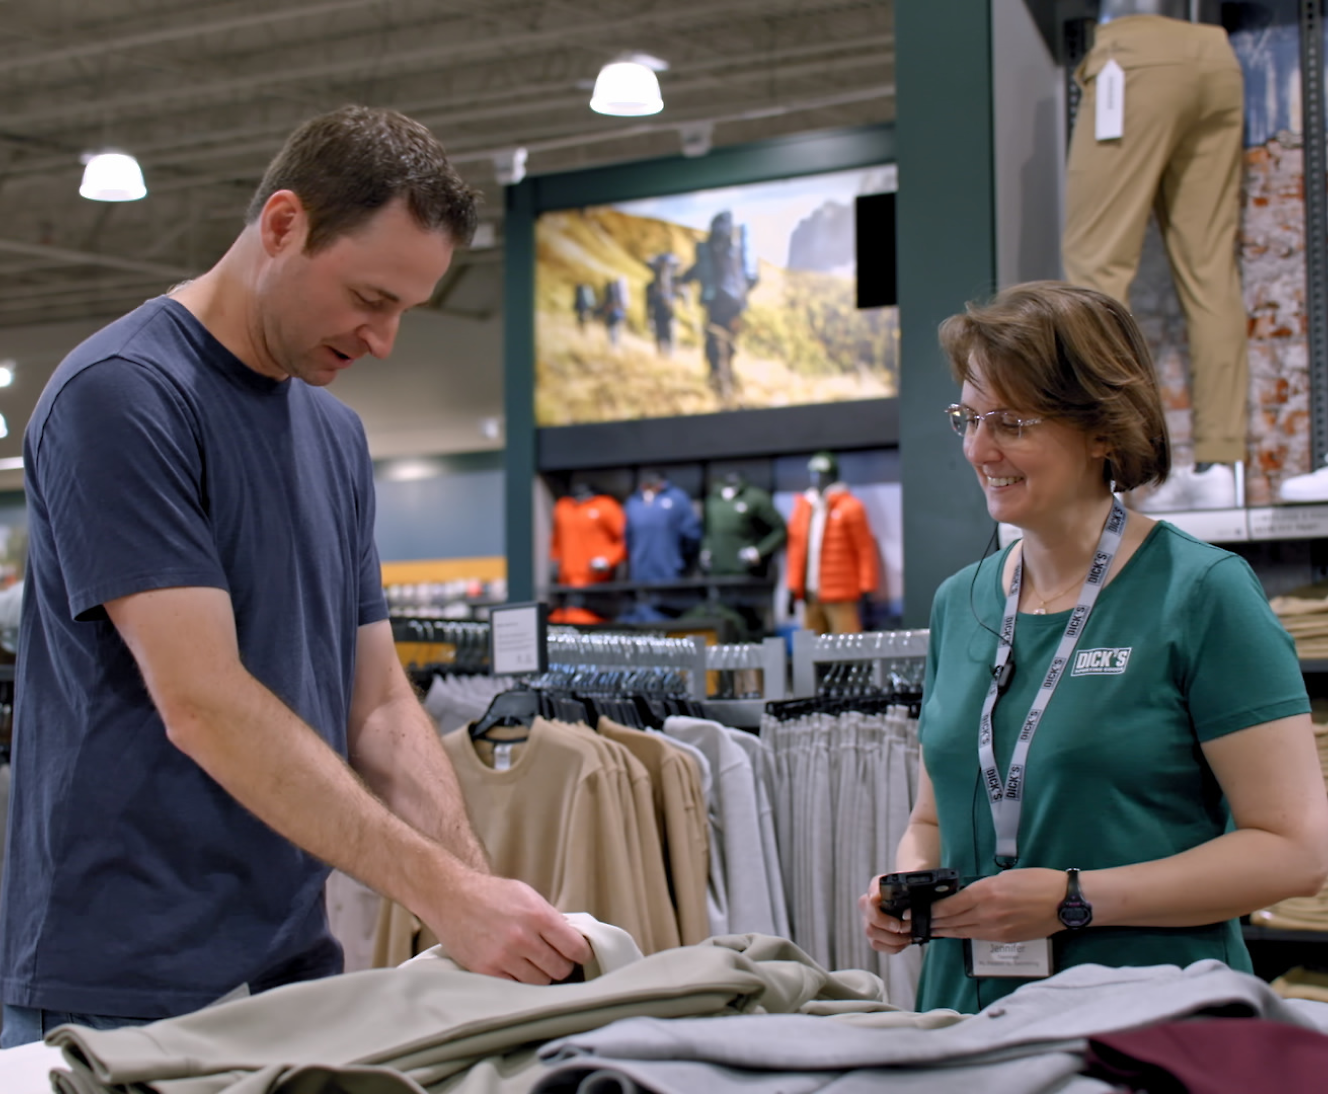 Un homme examine des vêtements au comptoir d’un magasin avec l’aide d’une employée souriante portant un badge avec son nom.